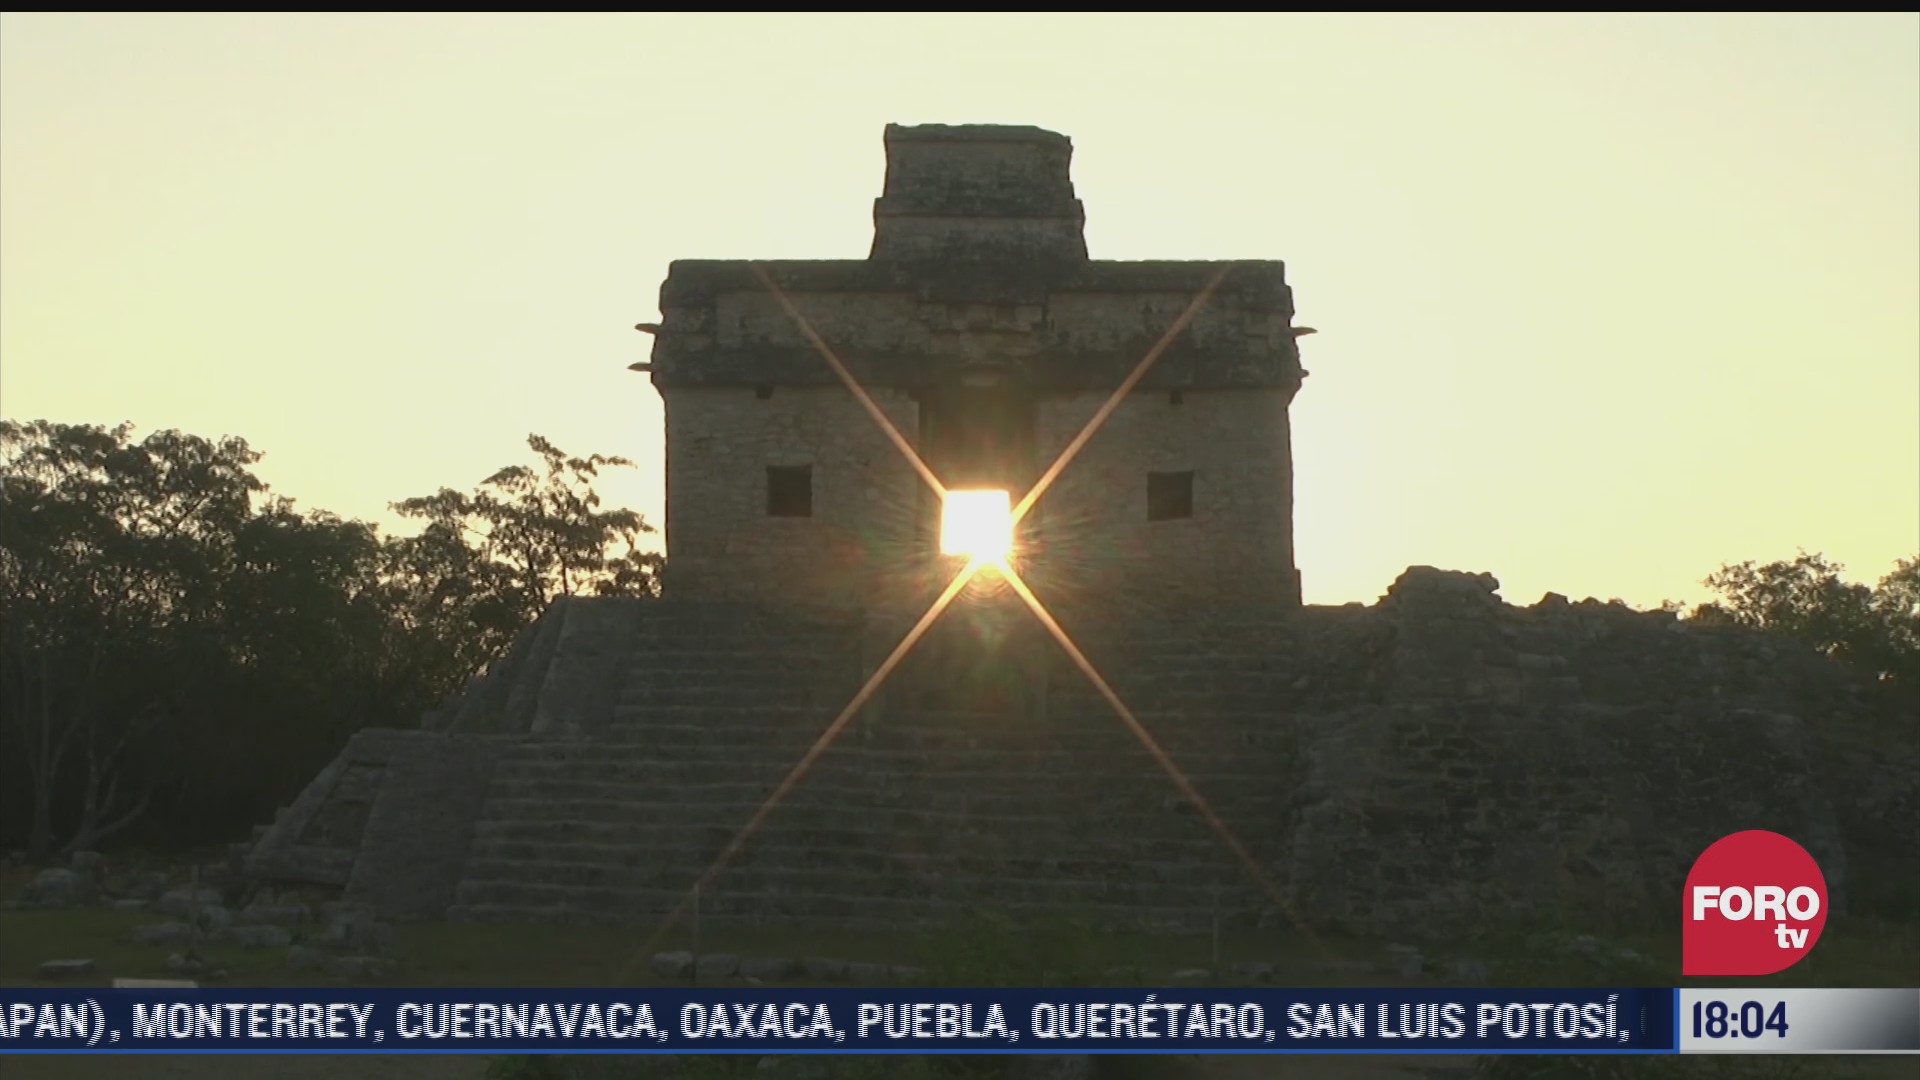 equinoccio de primavera en centros ceremoniales y ruinas arqueologicas en yucatan